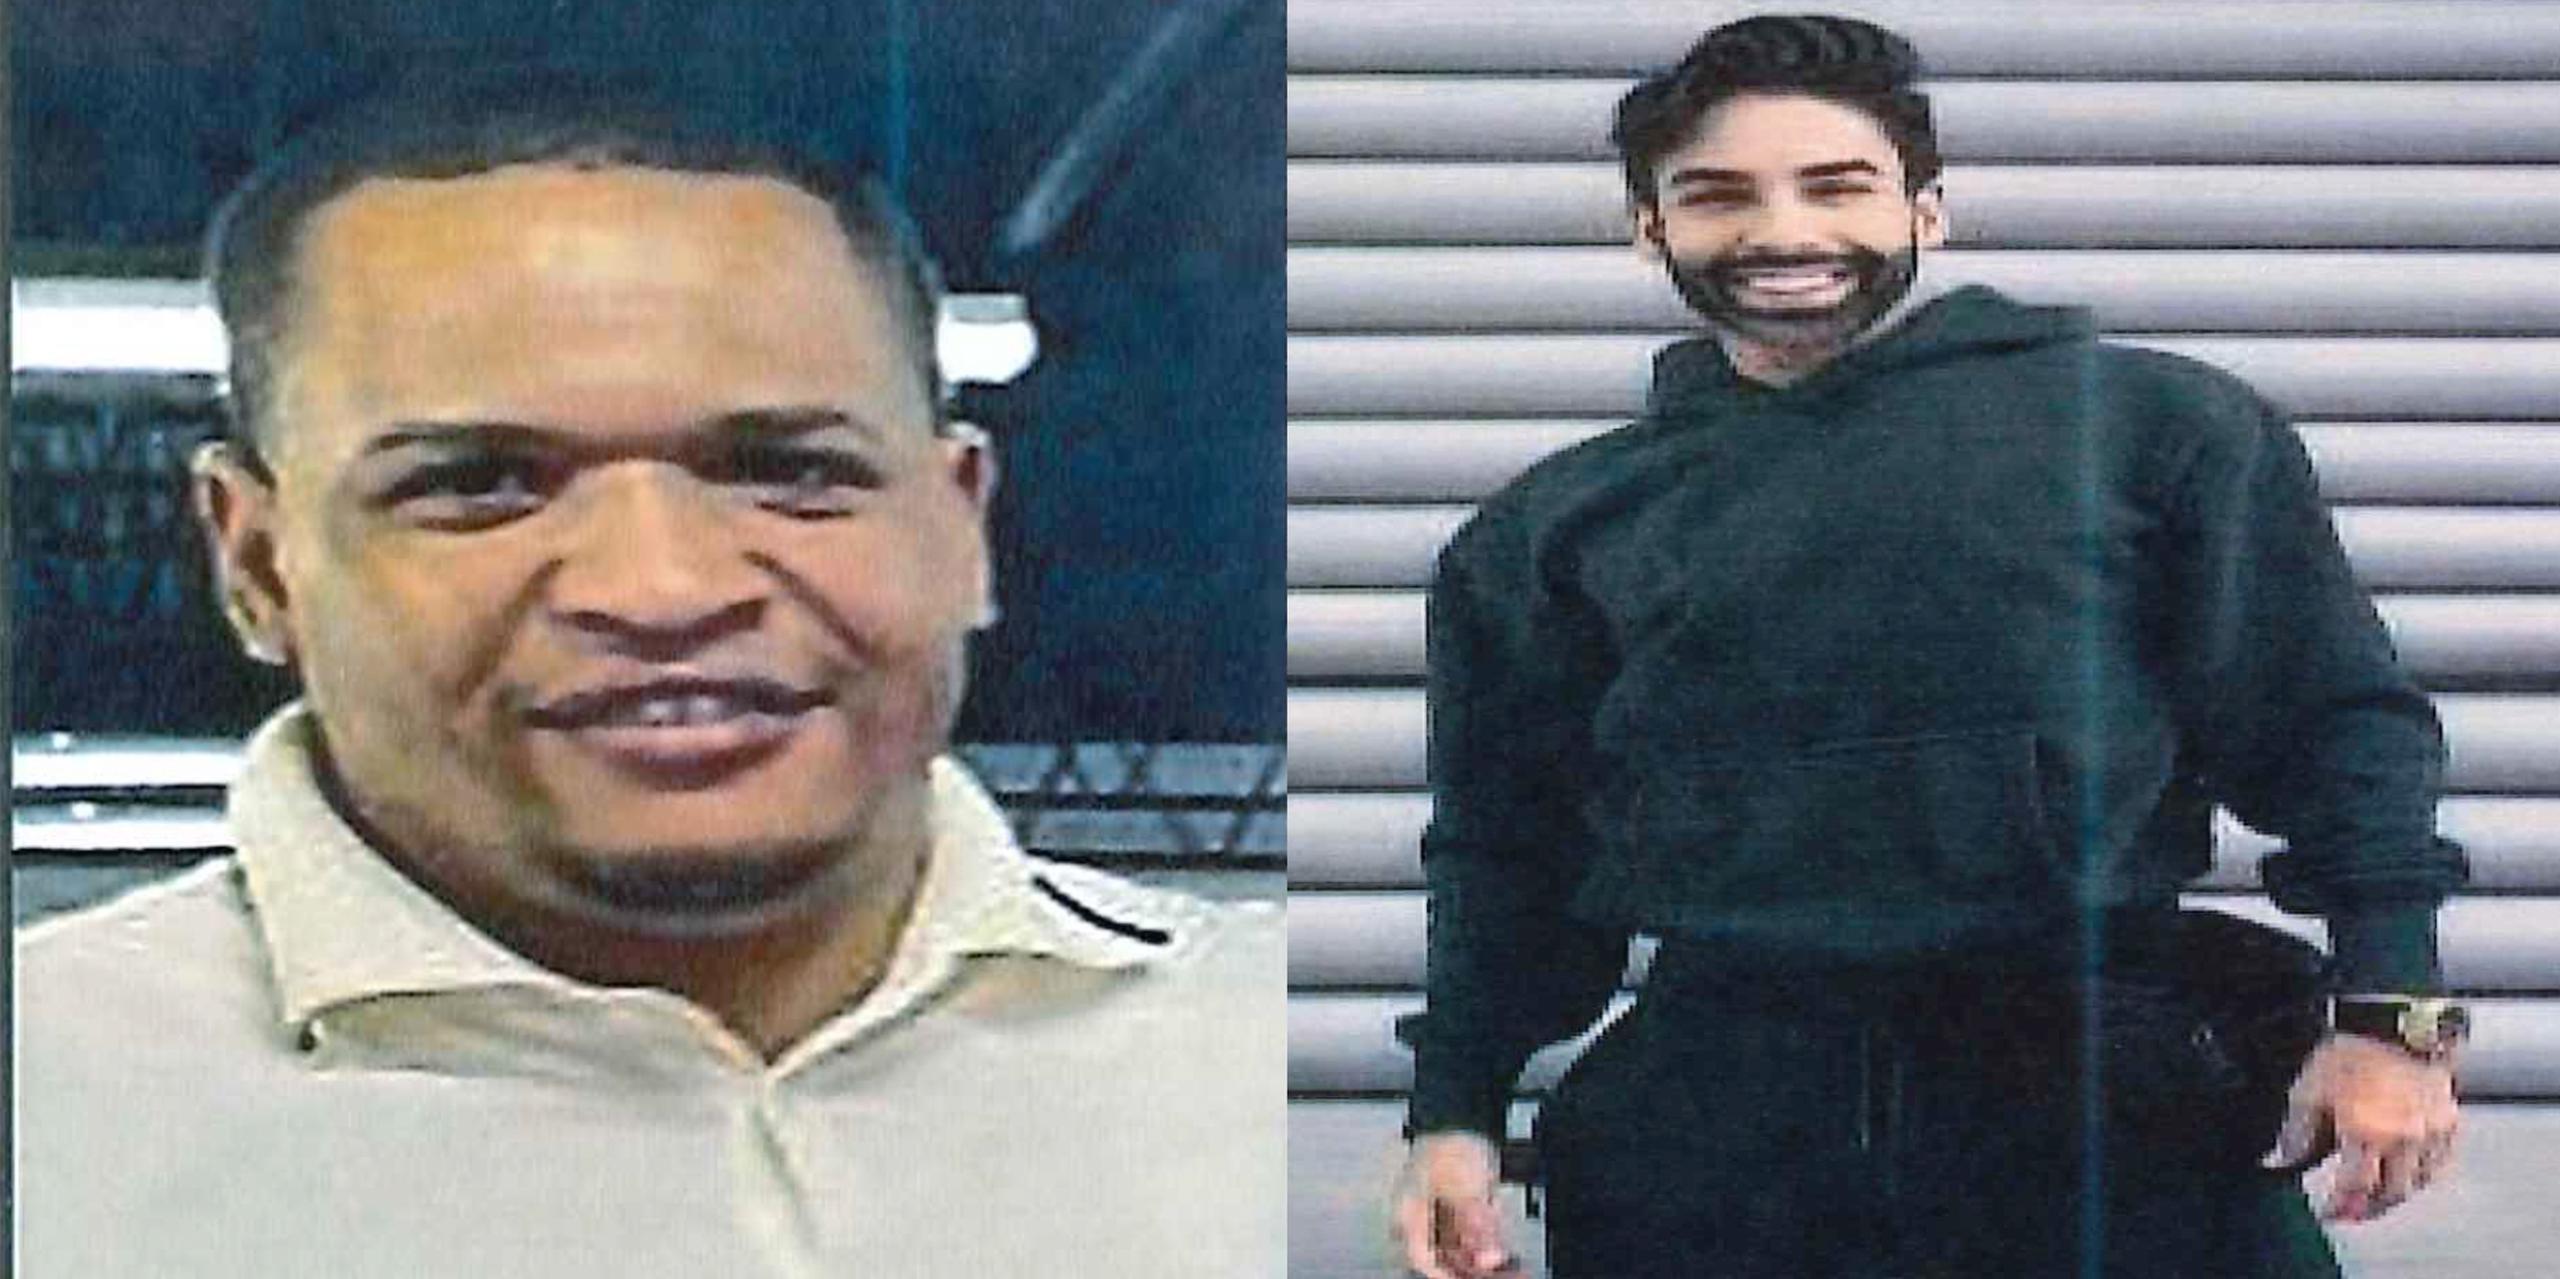 Yohauris Hiches Frías, a la izquierda, fue reportado desaparecido el 13 de septiembre, mientras que Eddie Morales Rodríguez fue reportado desaparecido el 27 de julio.